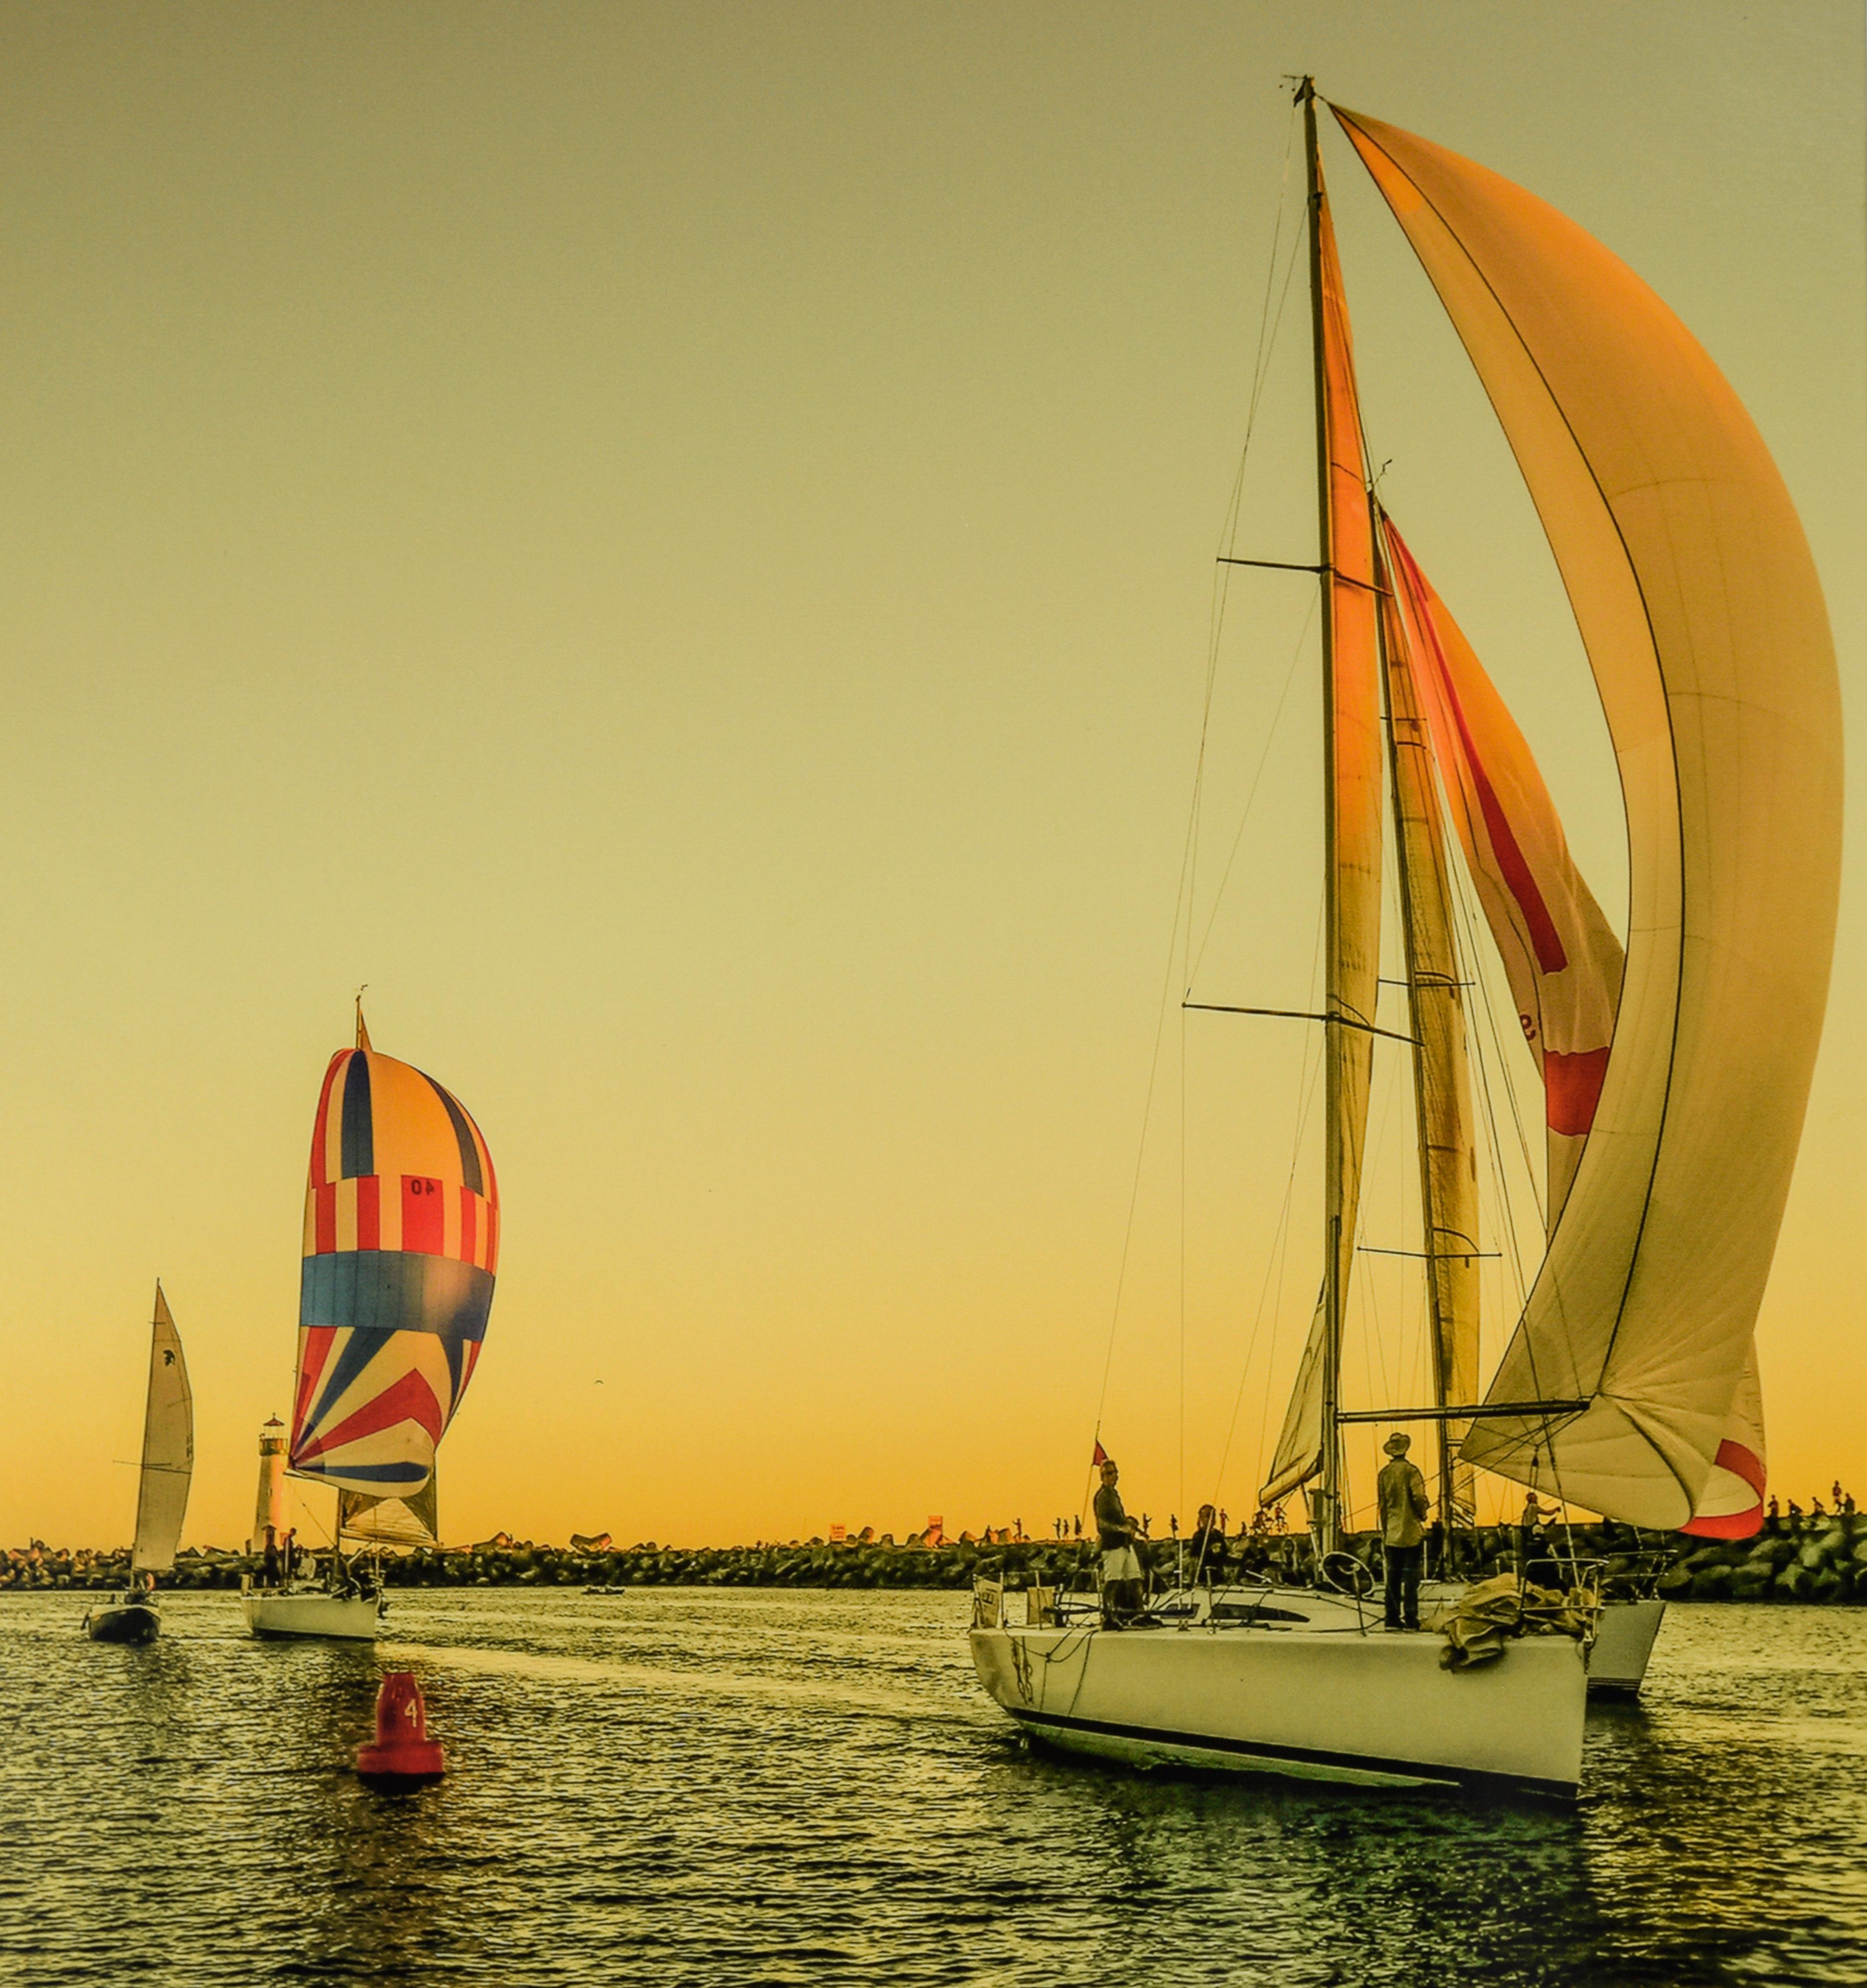 Boats Segeln bei Sonnenuntergang, Santa Cruz – Farbfotografie

Farbfotografie von Segelbooten bei Sonnenuntergang vor dem Breakwater-Leuchtturm in Santa Cruz, Kalifornien, von John F. Hunter (Amerikaner). Der Betrachter blickt auf das Meer hinaus,